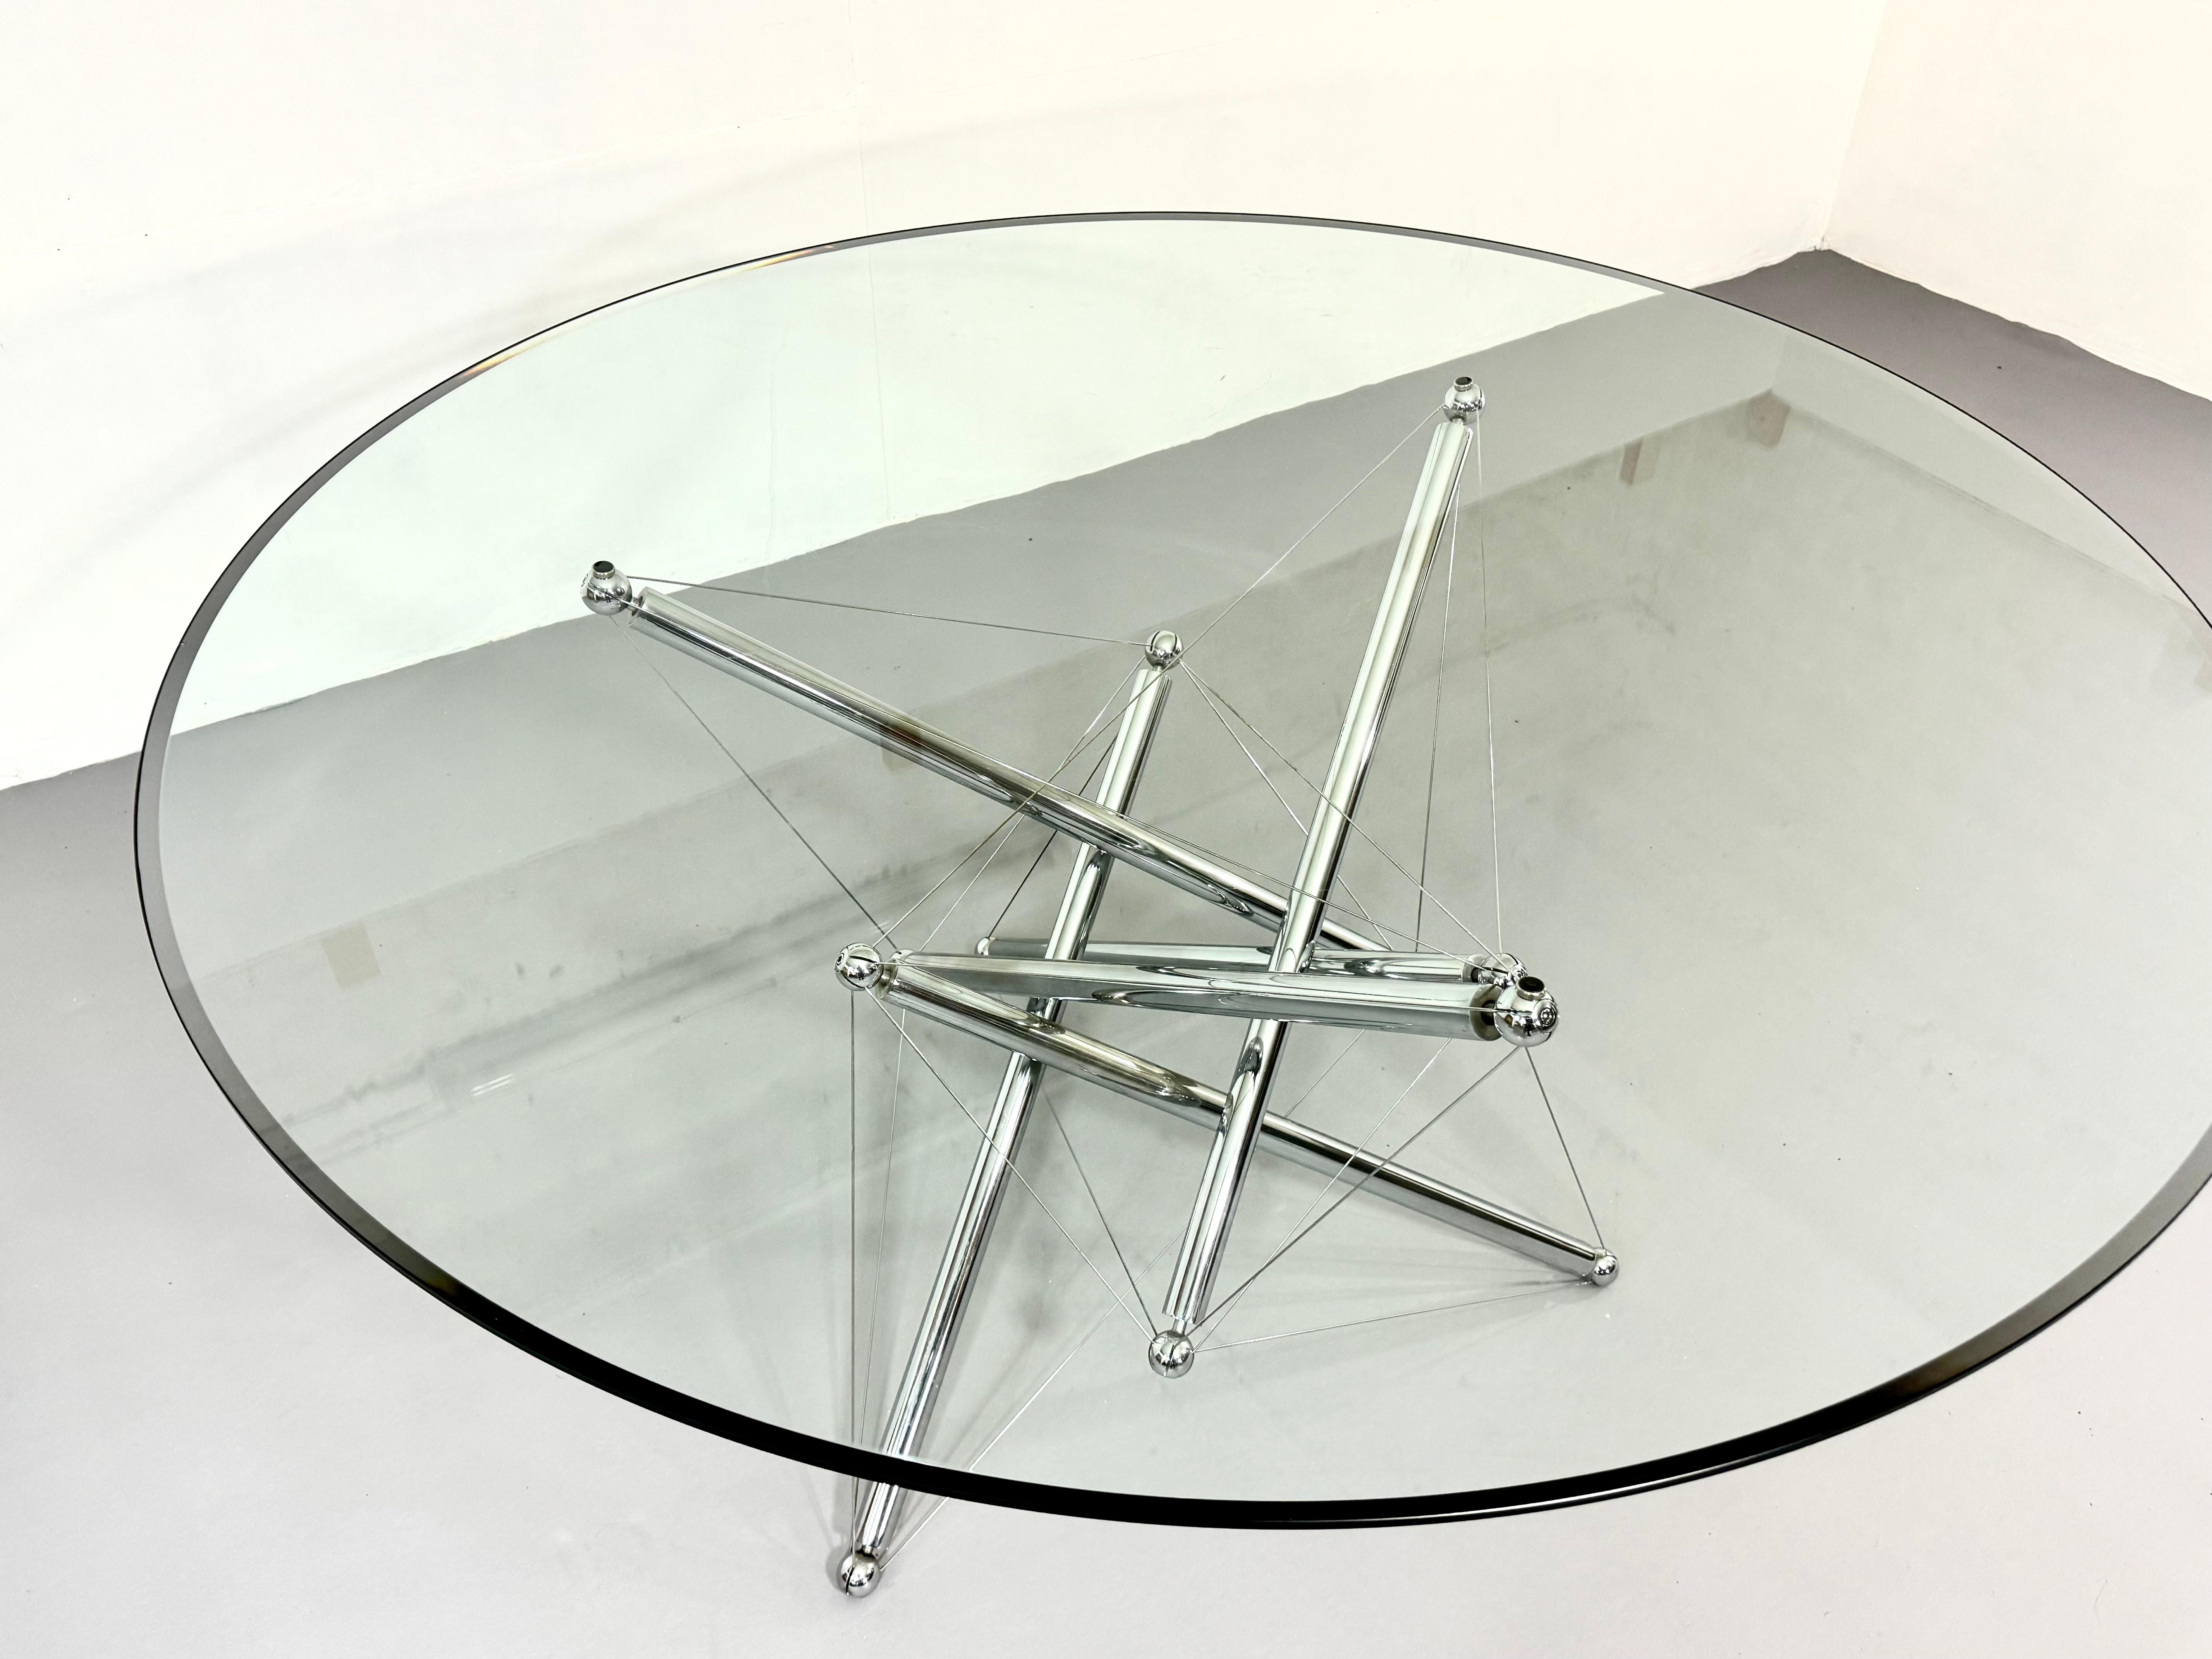 Plongez dans le monde de l'élégance intemporelle avec la table de salle à manger Cassina 714, un chef-d'œuvre d'ingéniosité en matière de design signé Theodore Waddell. Fabriquée en 1973, cette table emblématique présente un mélange parfait